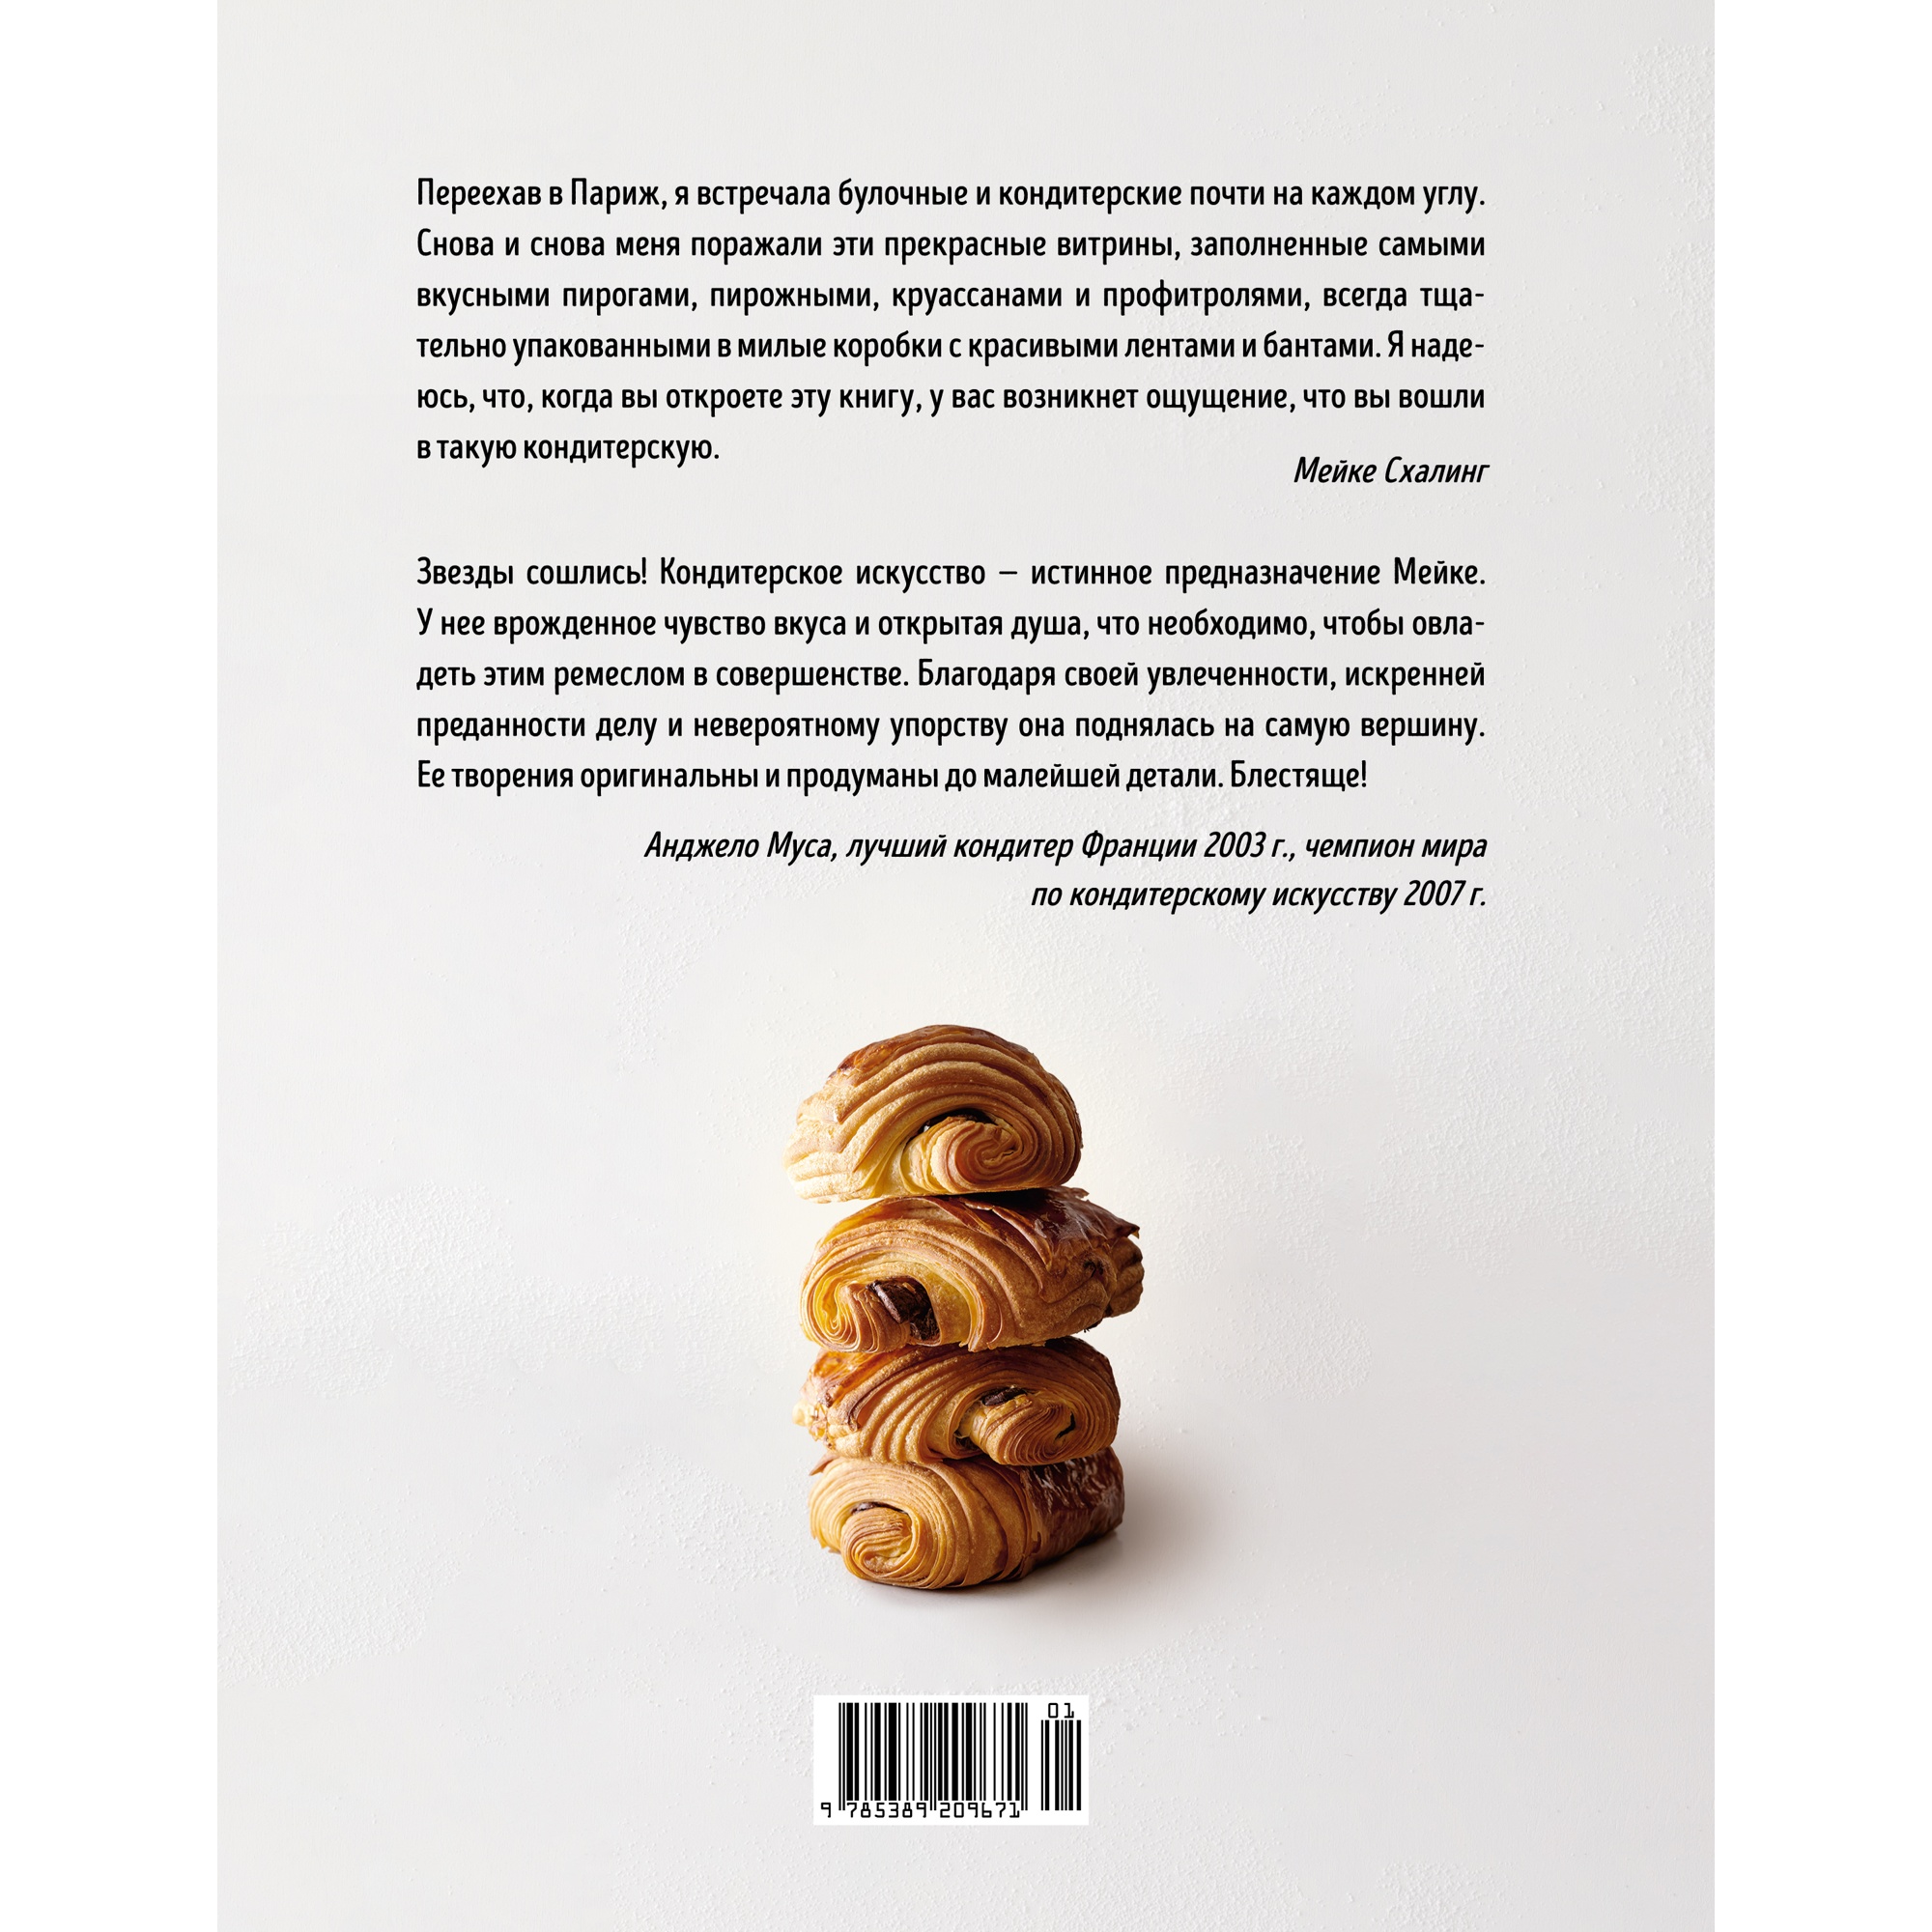 Книга КОЛИБРИ Французская сладкая выпечка Схалинг М. Серия: Высокая кухня - фото 11